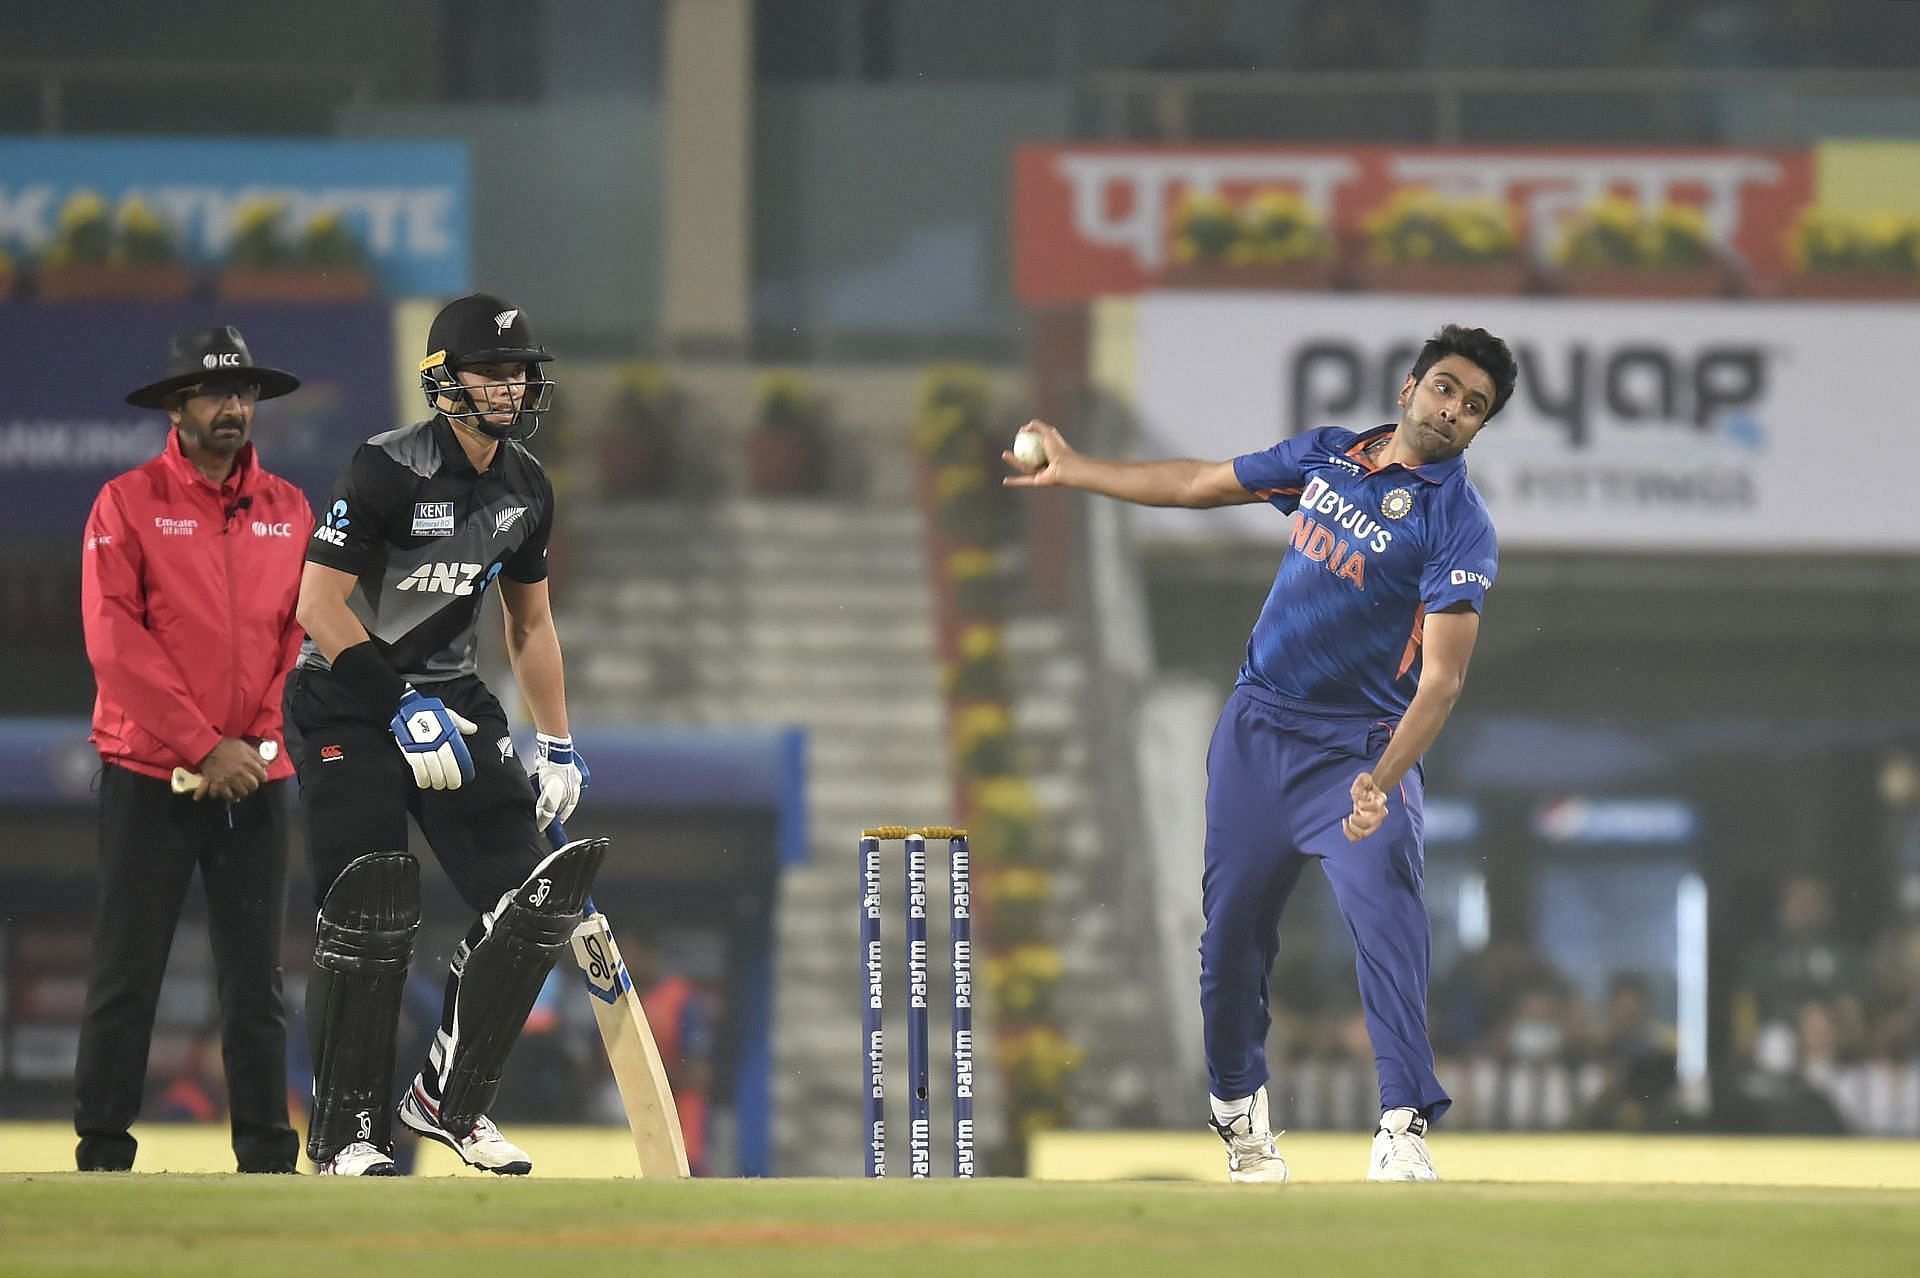 रविचंद्रन अश्विन ने टी20 क्रिकेट में जबरदस्त गेंदबाजी की है